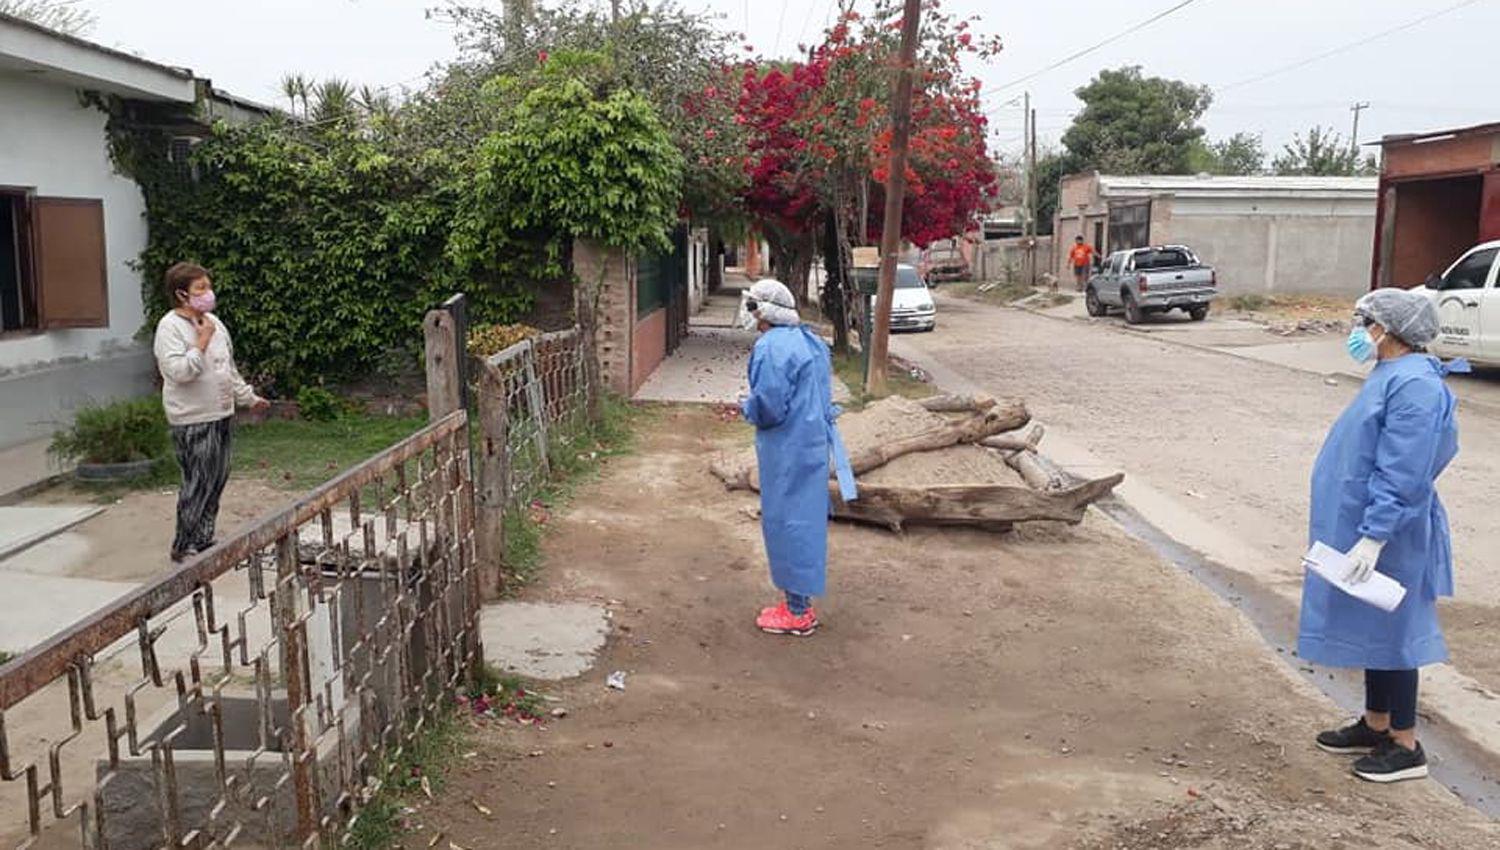 El coronavirus no da tregua en Santiago- Hoy se reportoacute una muerte y 68 nuevos contagios